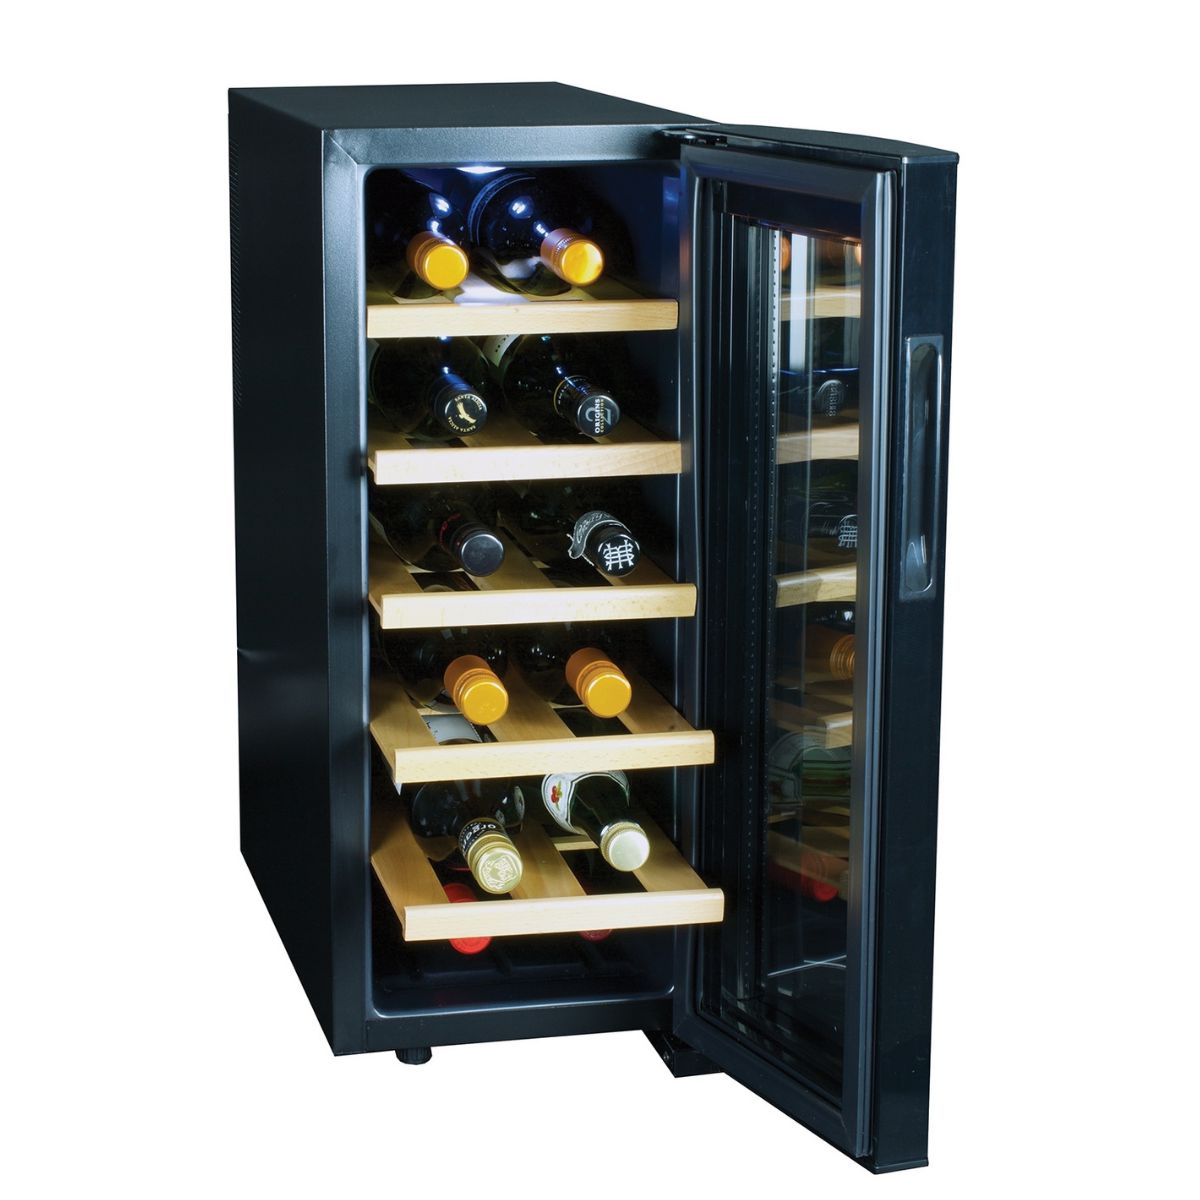 Koolatron WC12-35D 12 Bottle Deluxe Thermoelectric Wine Cooler | TechSpirit Inc.